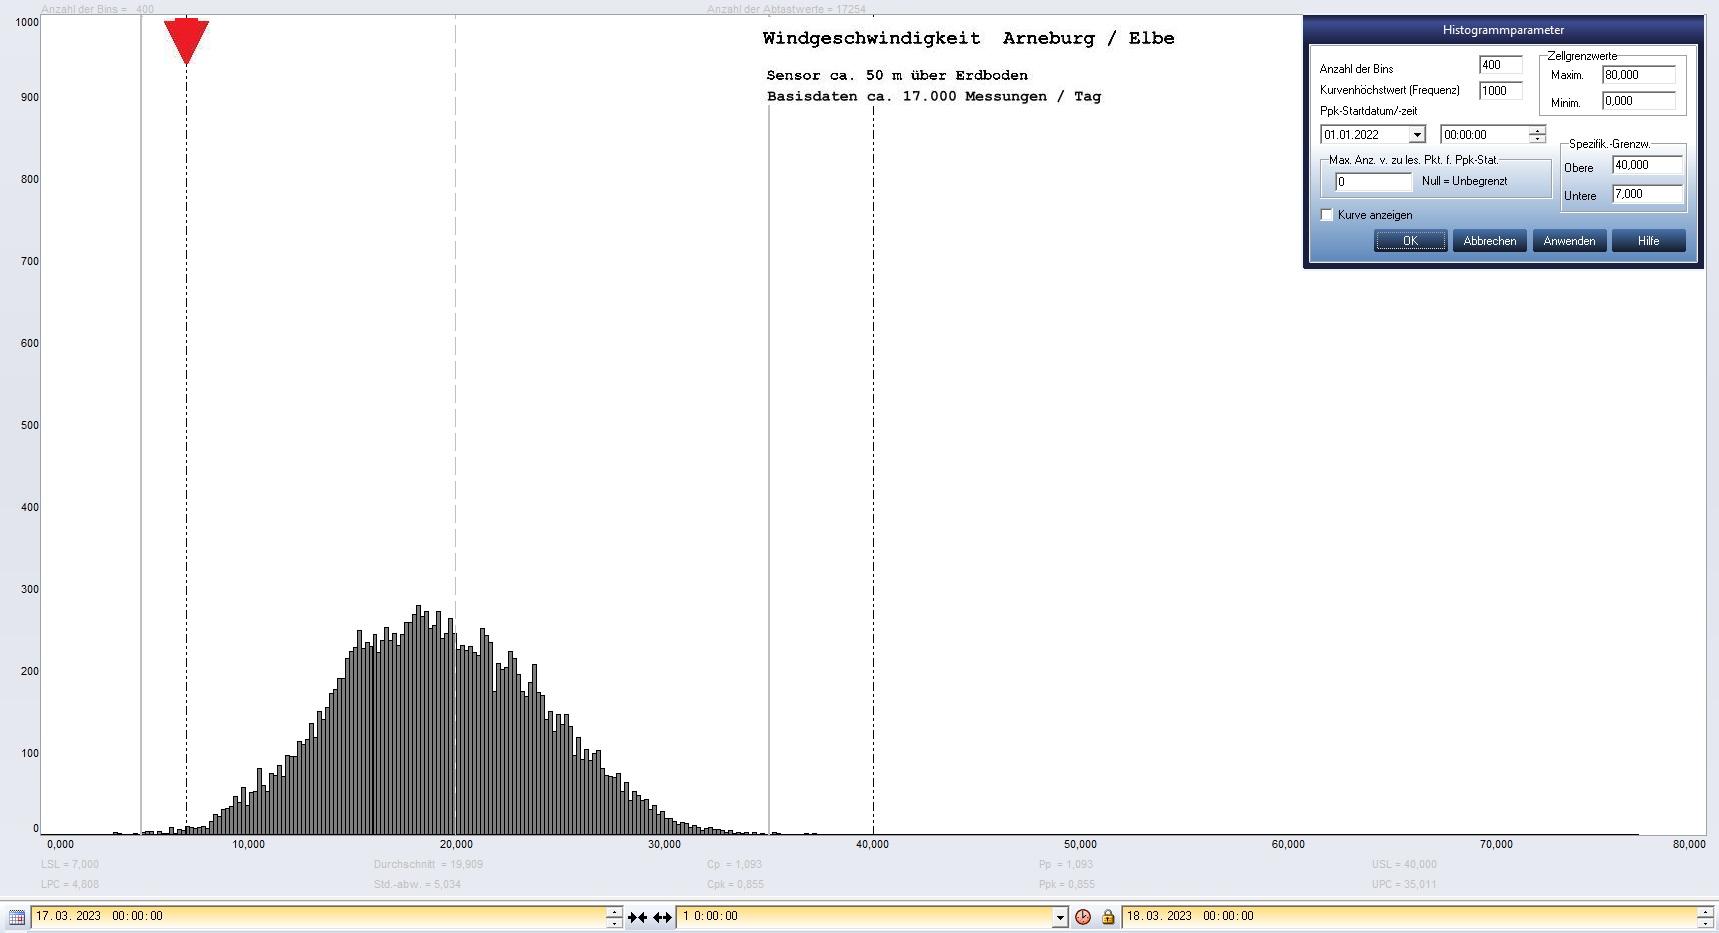 Arneburg Tages-Histogramm Winddaten, 17.03.2023
  Histogramm, Sensor auf Gebude, ca. 50 m ber Erdboden, Basis: 5s-Aufzeichnung